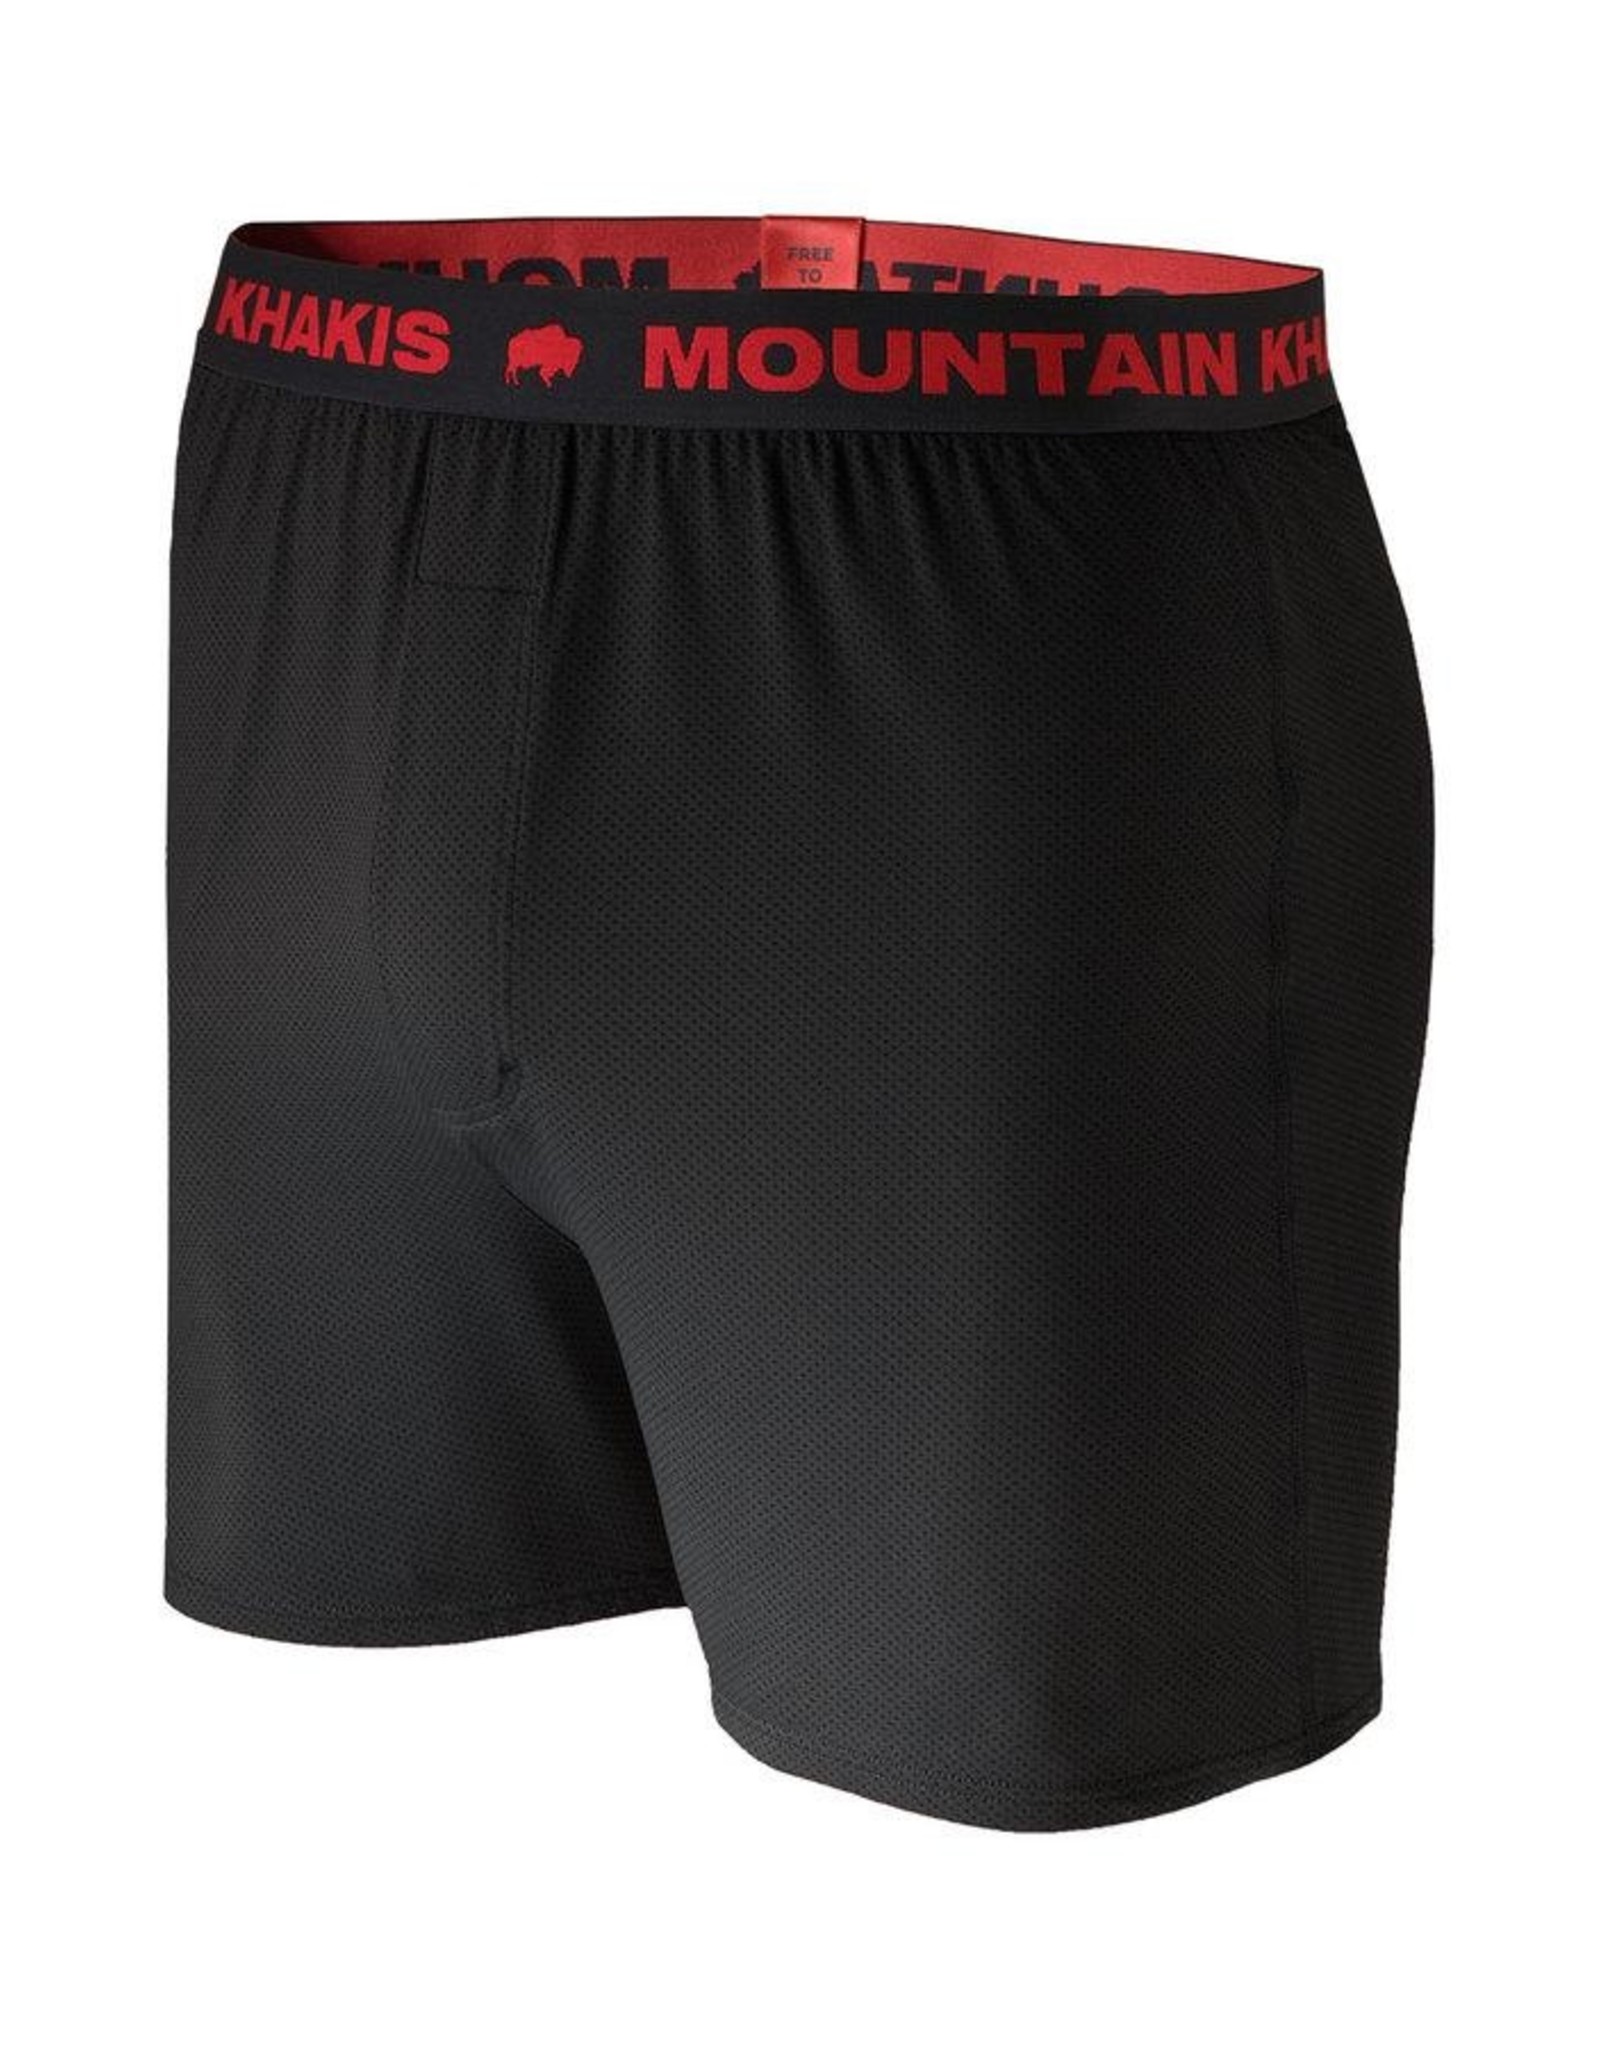 Mountain Khakis Mountain Khakis M Bison Boxers